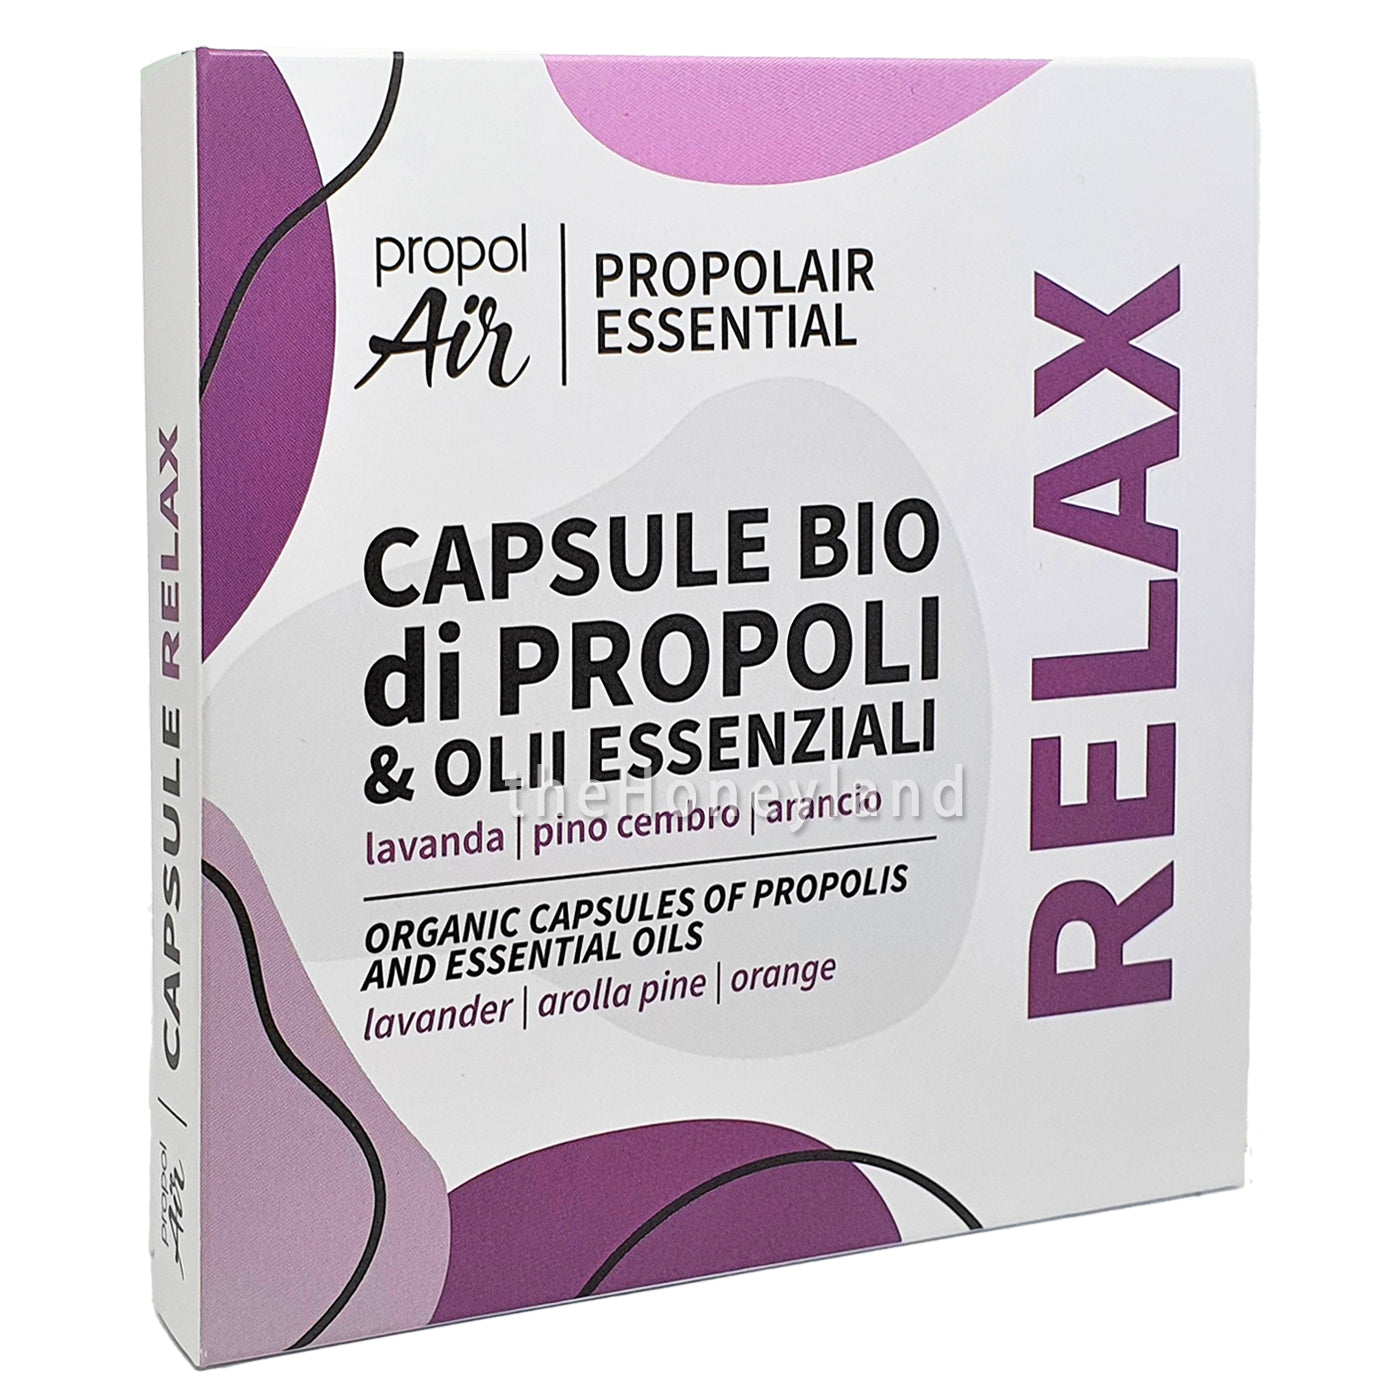 Capsule Propoli Bio Relax con oli essenziali di lavanda, pino cembro e arancio